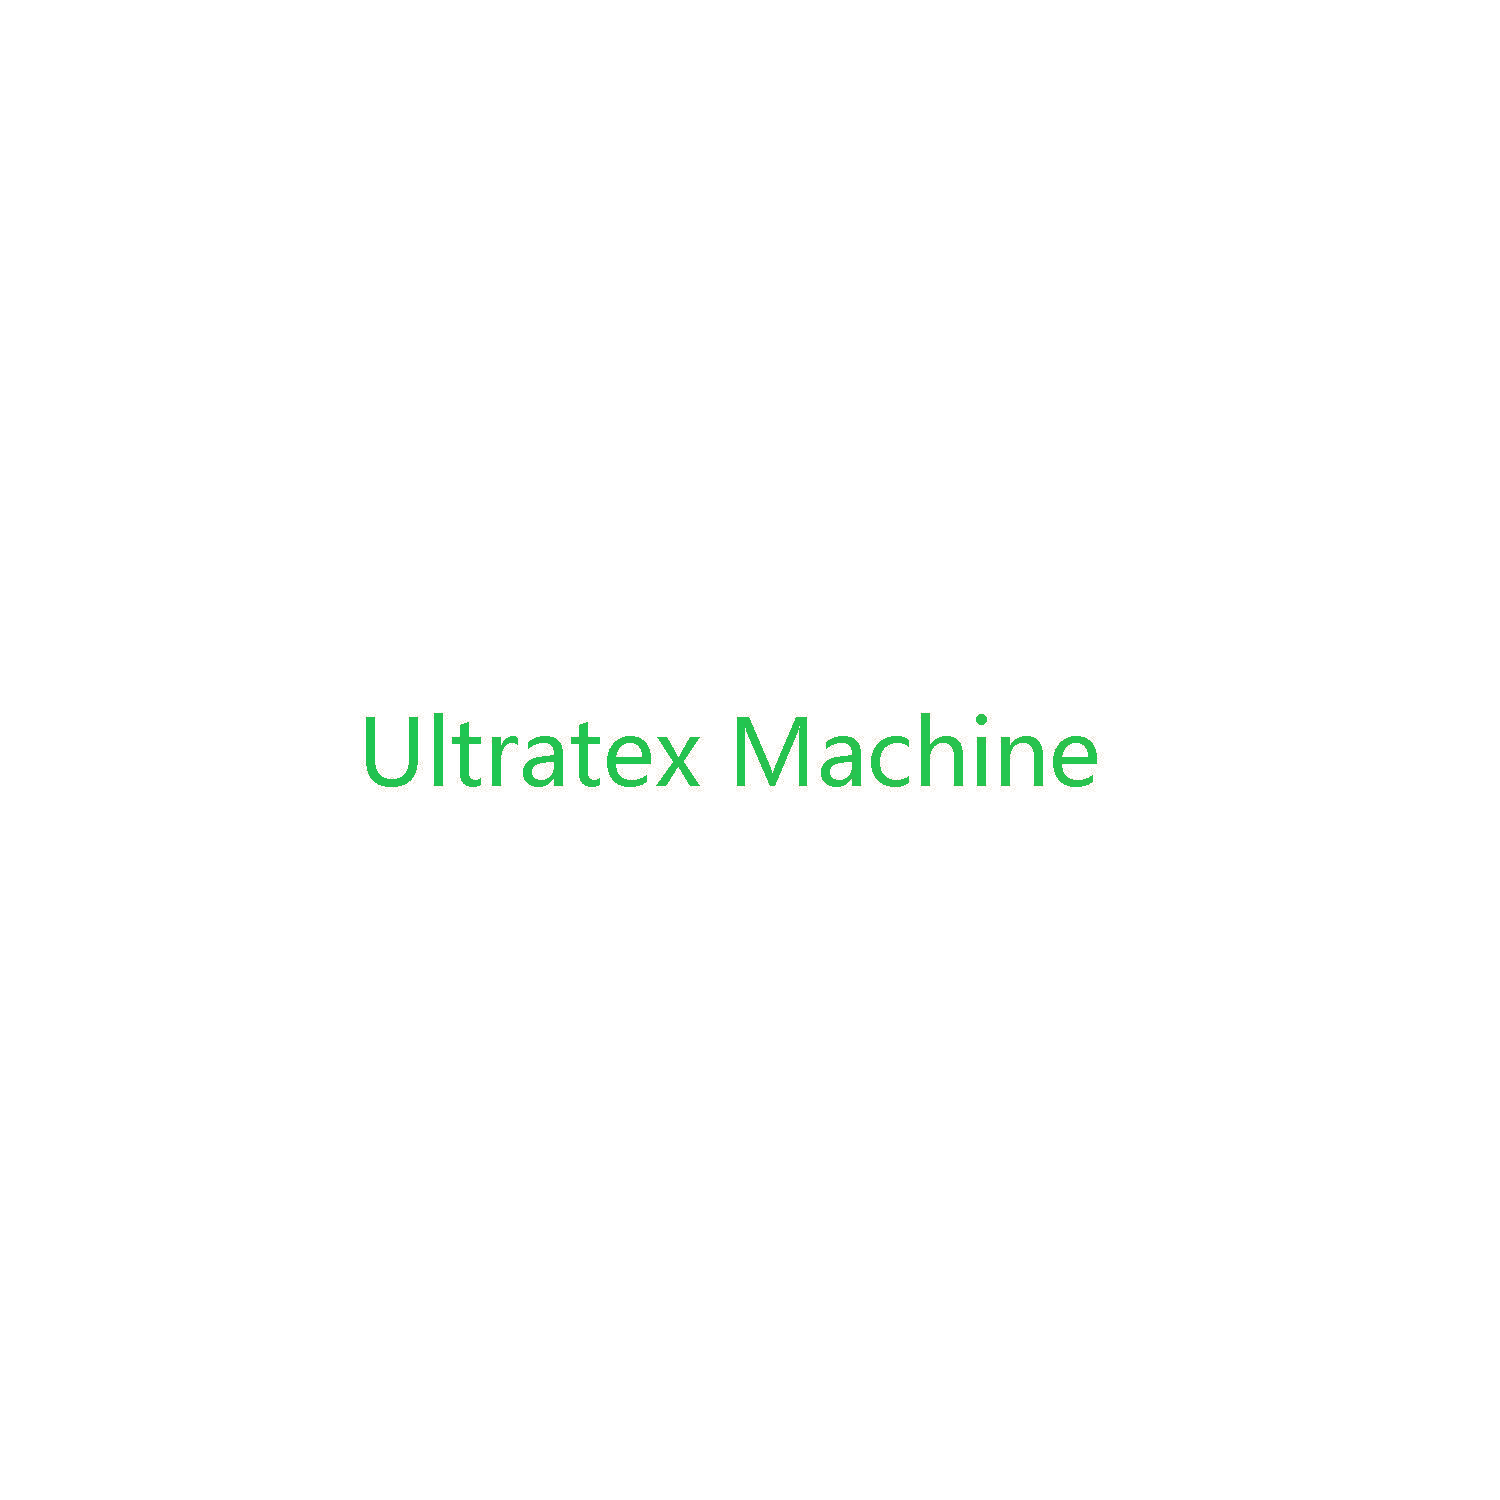 Ultratex Machine